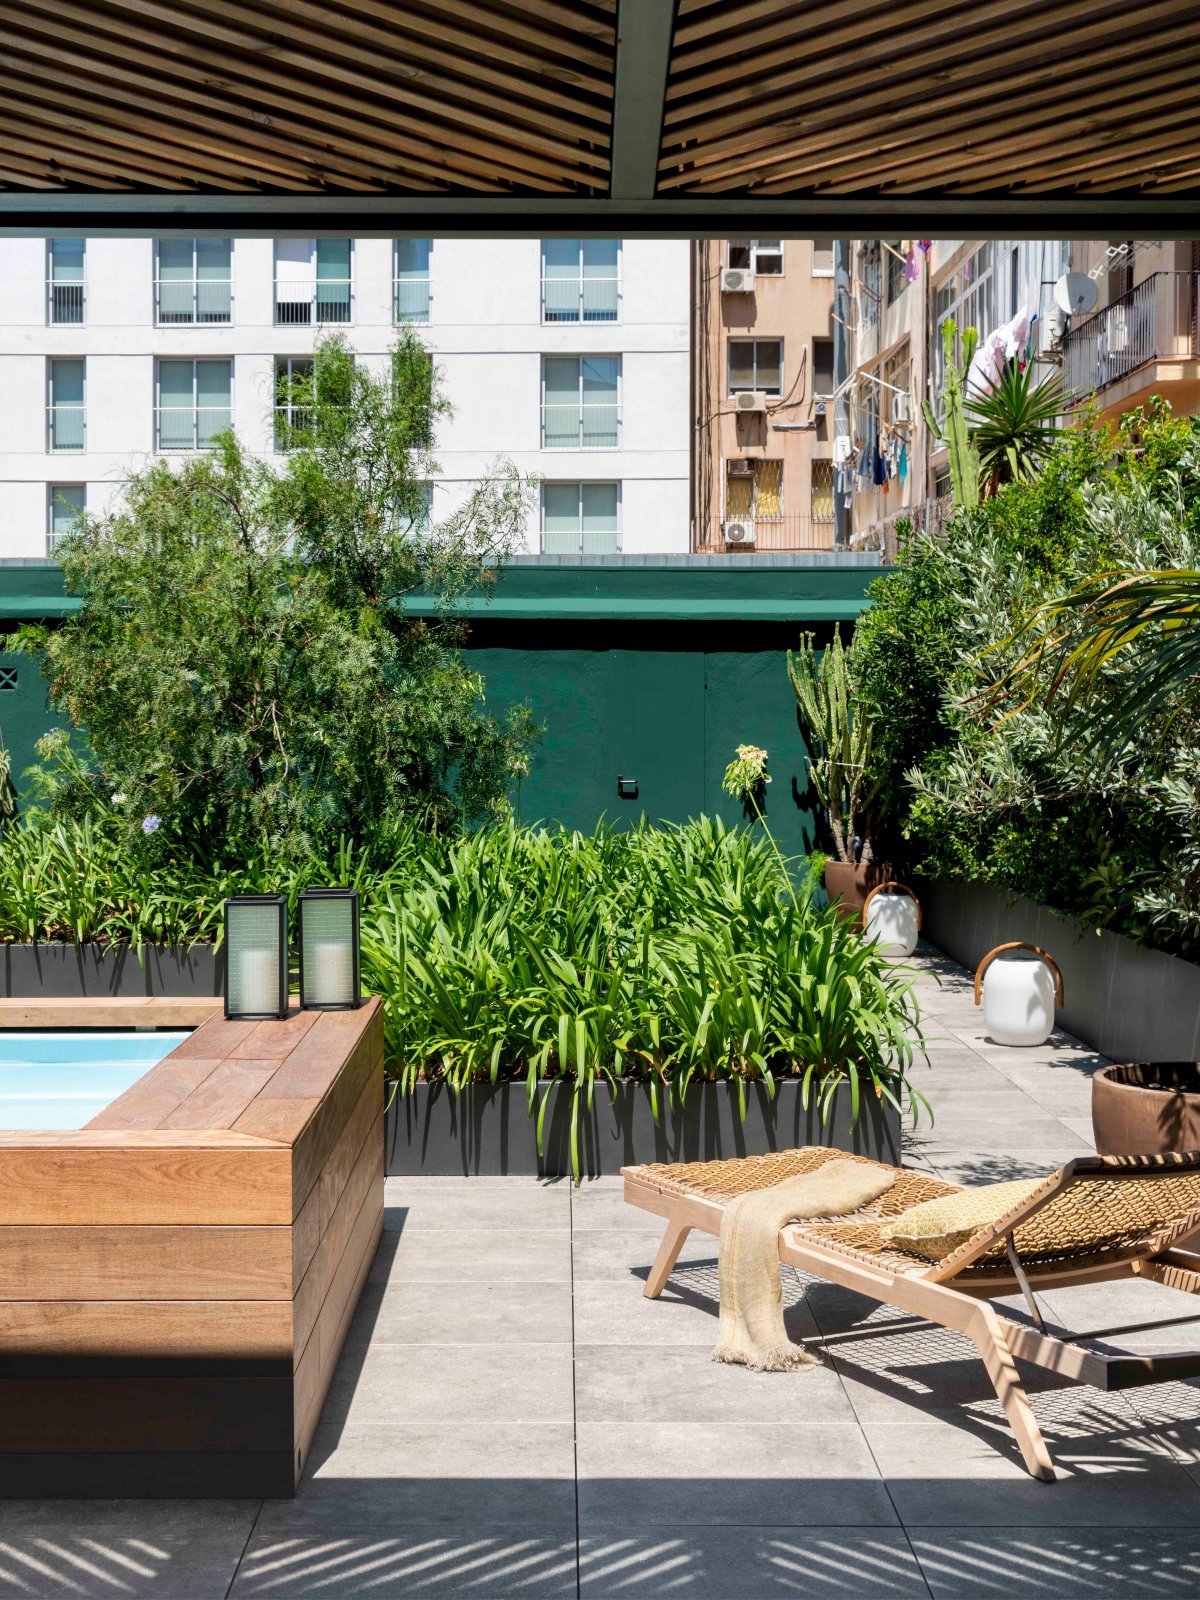 Terraza urbana en verde, madera y con piscina